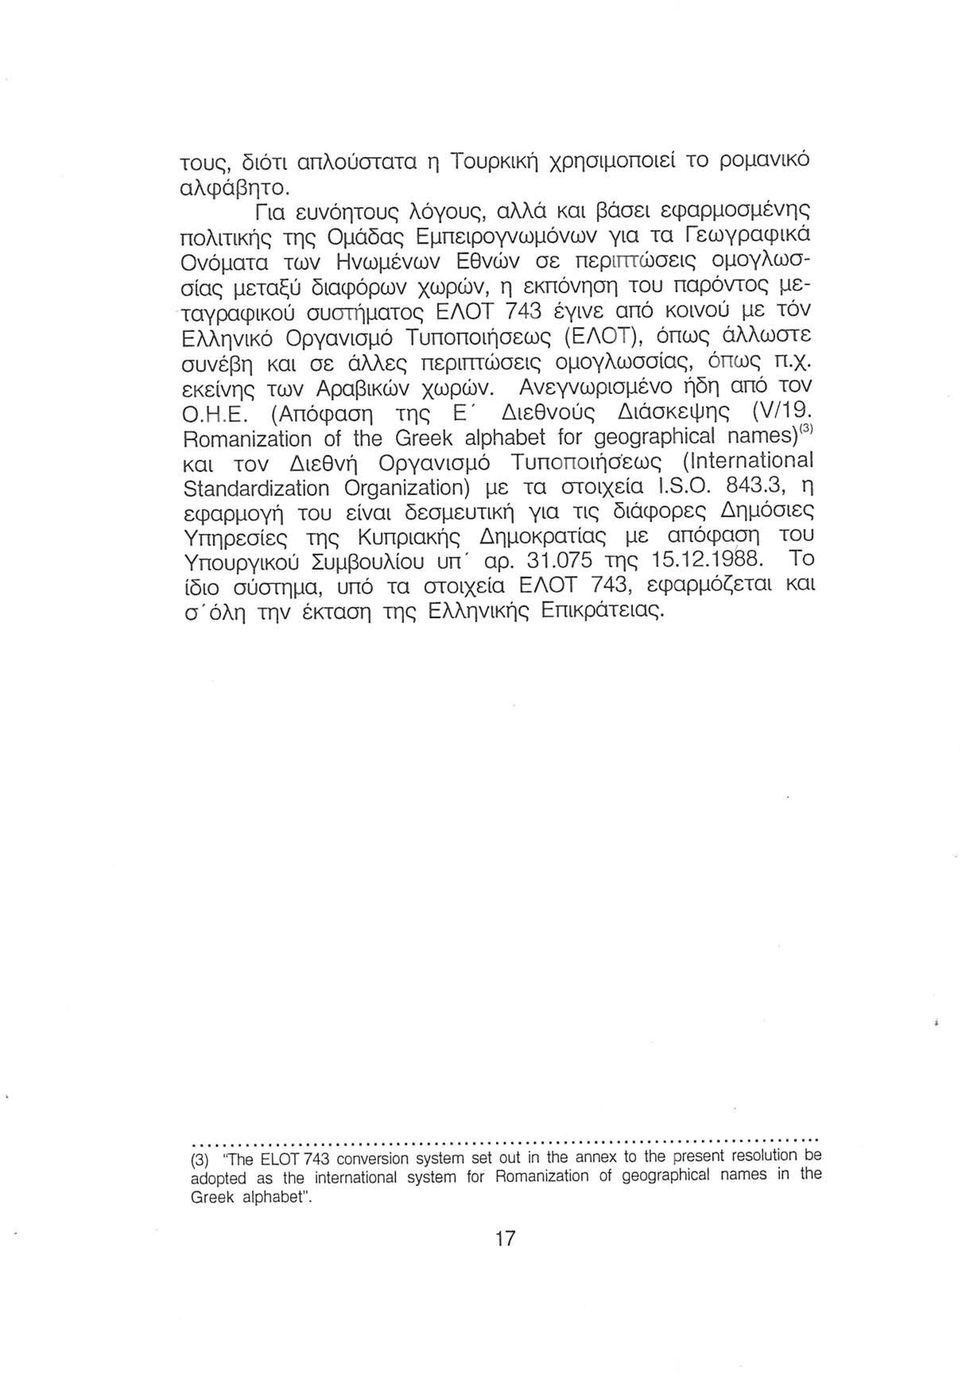 παρόντος μεταγραφικού συστήματος ΕΛΟΤ 743 έγινε από κοινού με τόν Ελληνικό Οργανισμό Τυποποιήσεως (ΕΛΟΤ), όπως άλλωστε συνέβη και σε άλλες περιπτώσεις ομογλωσσίας, όπως π.χ.